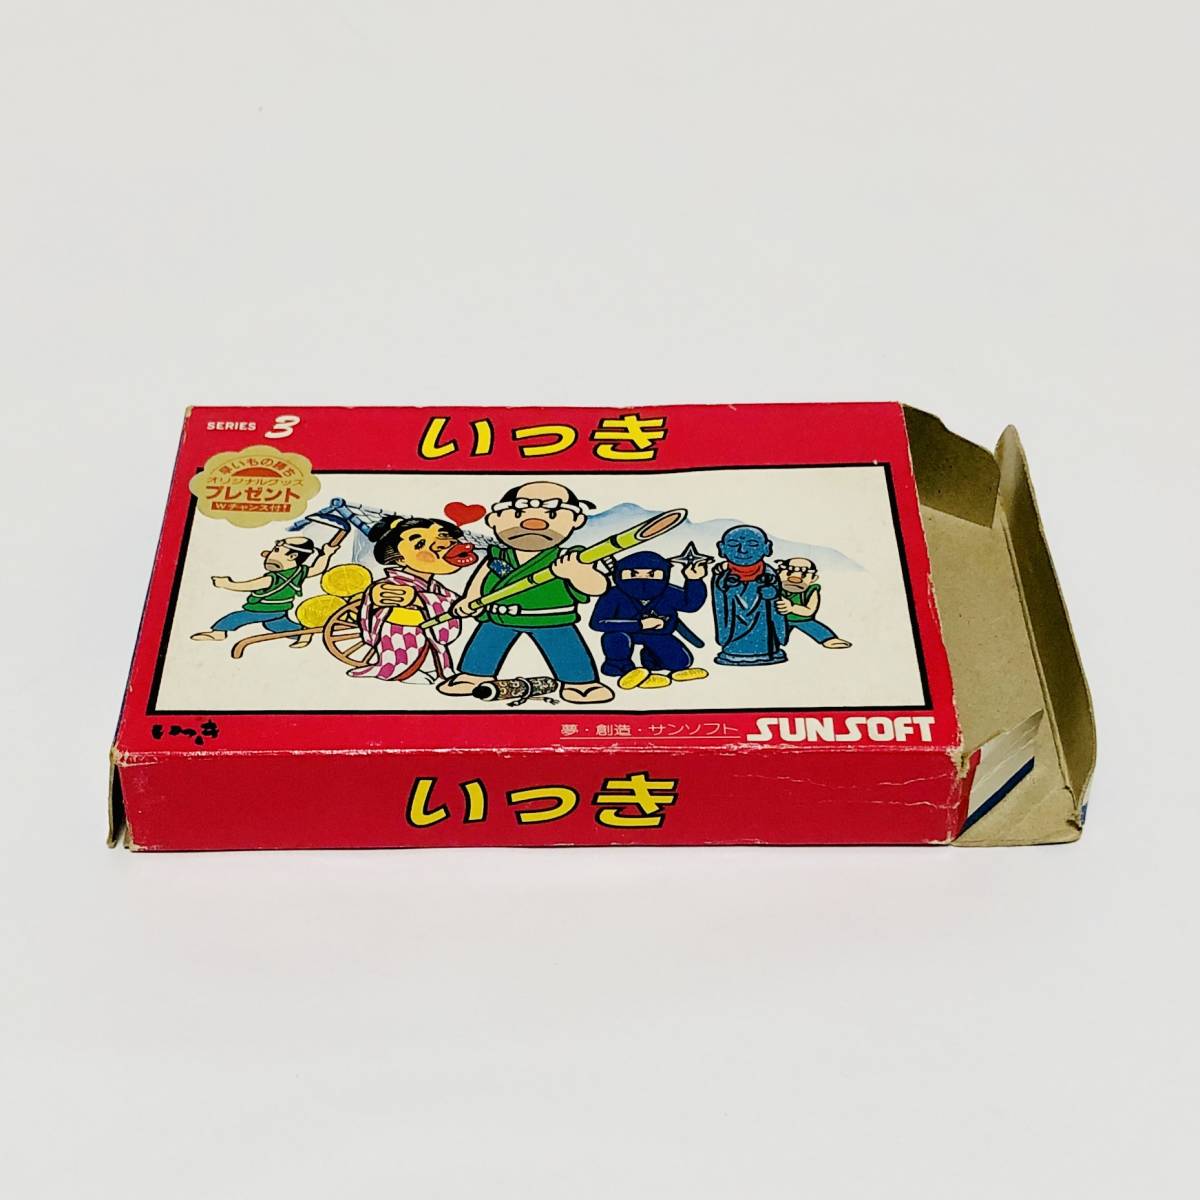 【送料無料】 ファミコン いっき 箱説付き 痛みあり サンソフト サン電子 レトロゲーム Nintendo Famicom Ikki CIB Sunsoft_画像4